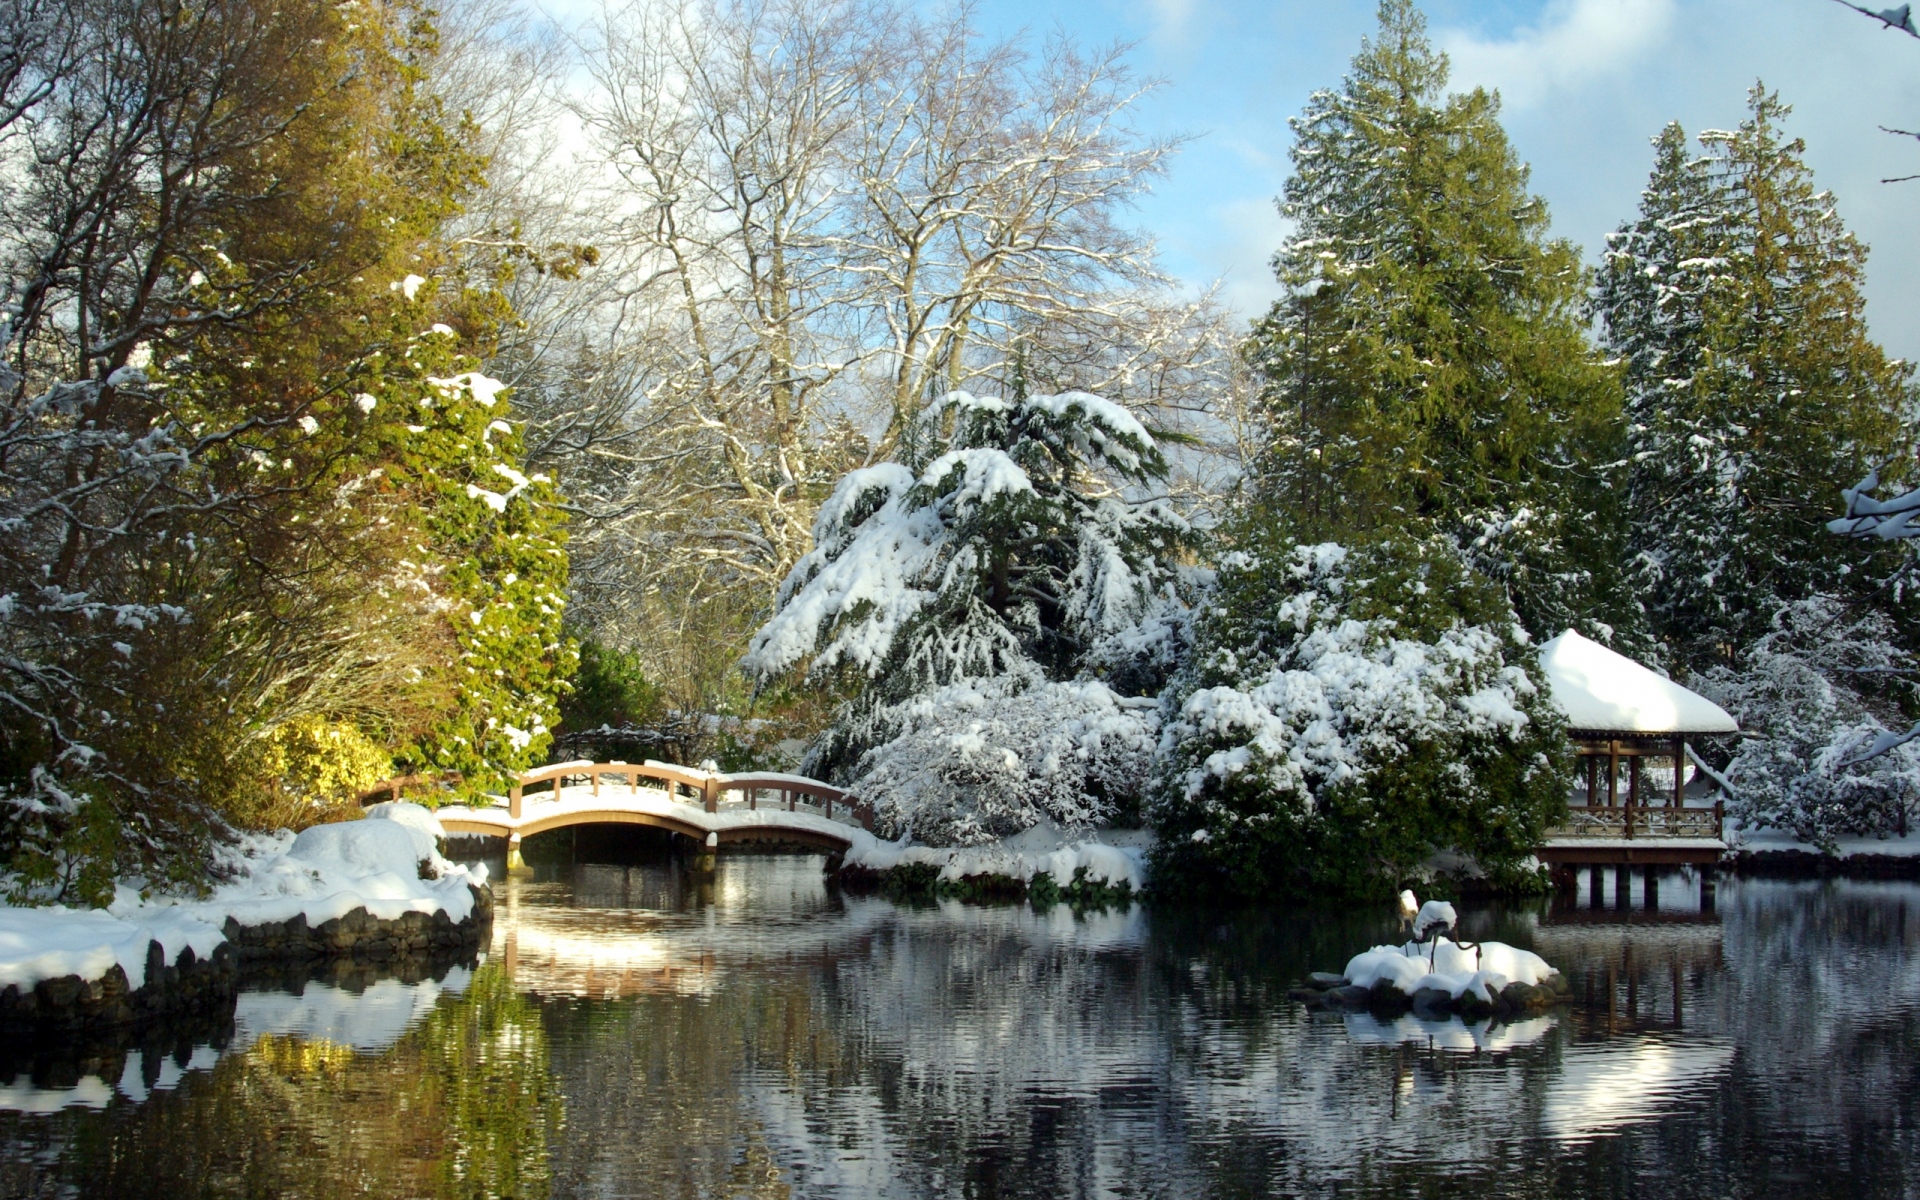 Картинки Парк хатлей, Япония, сад, пейзаж, мост, снег, озеро, беседка, деревья фото и обои на рабочий стол